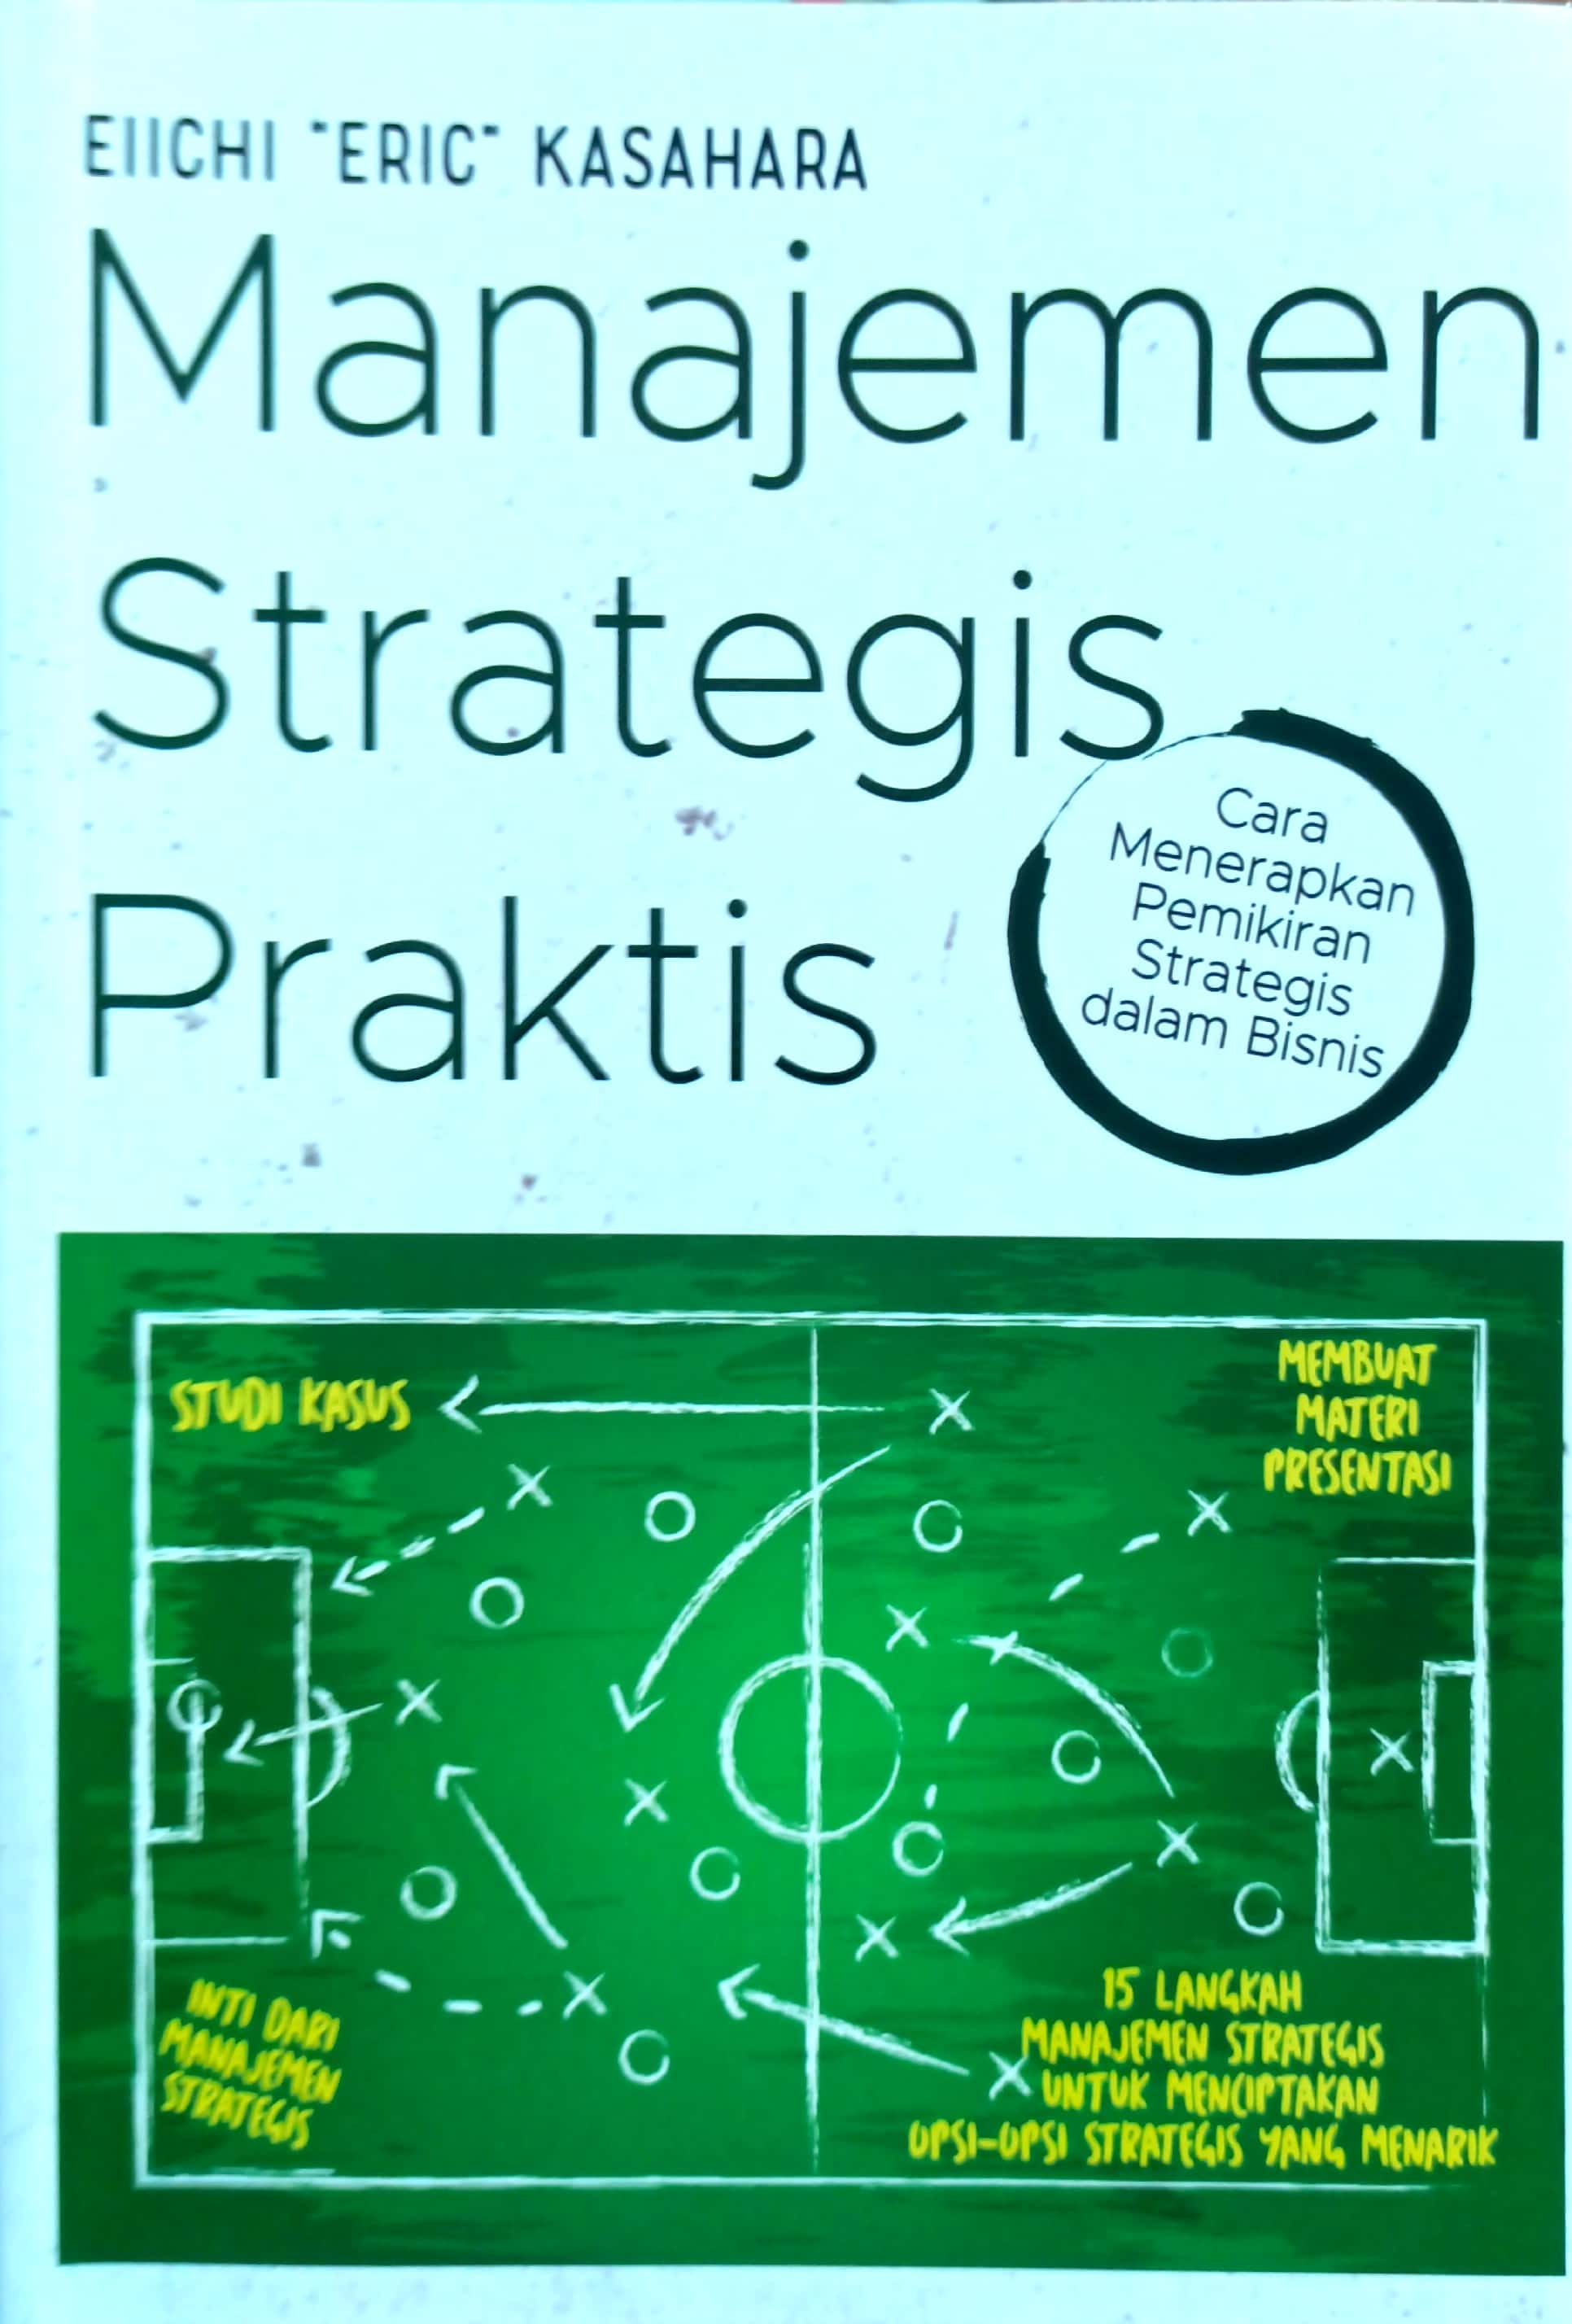 Manajemen Strategis Praktis : cara menerapkan pemikiran strategis dalam bisnis